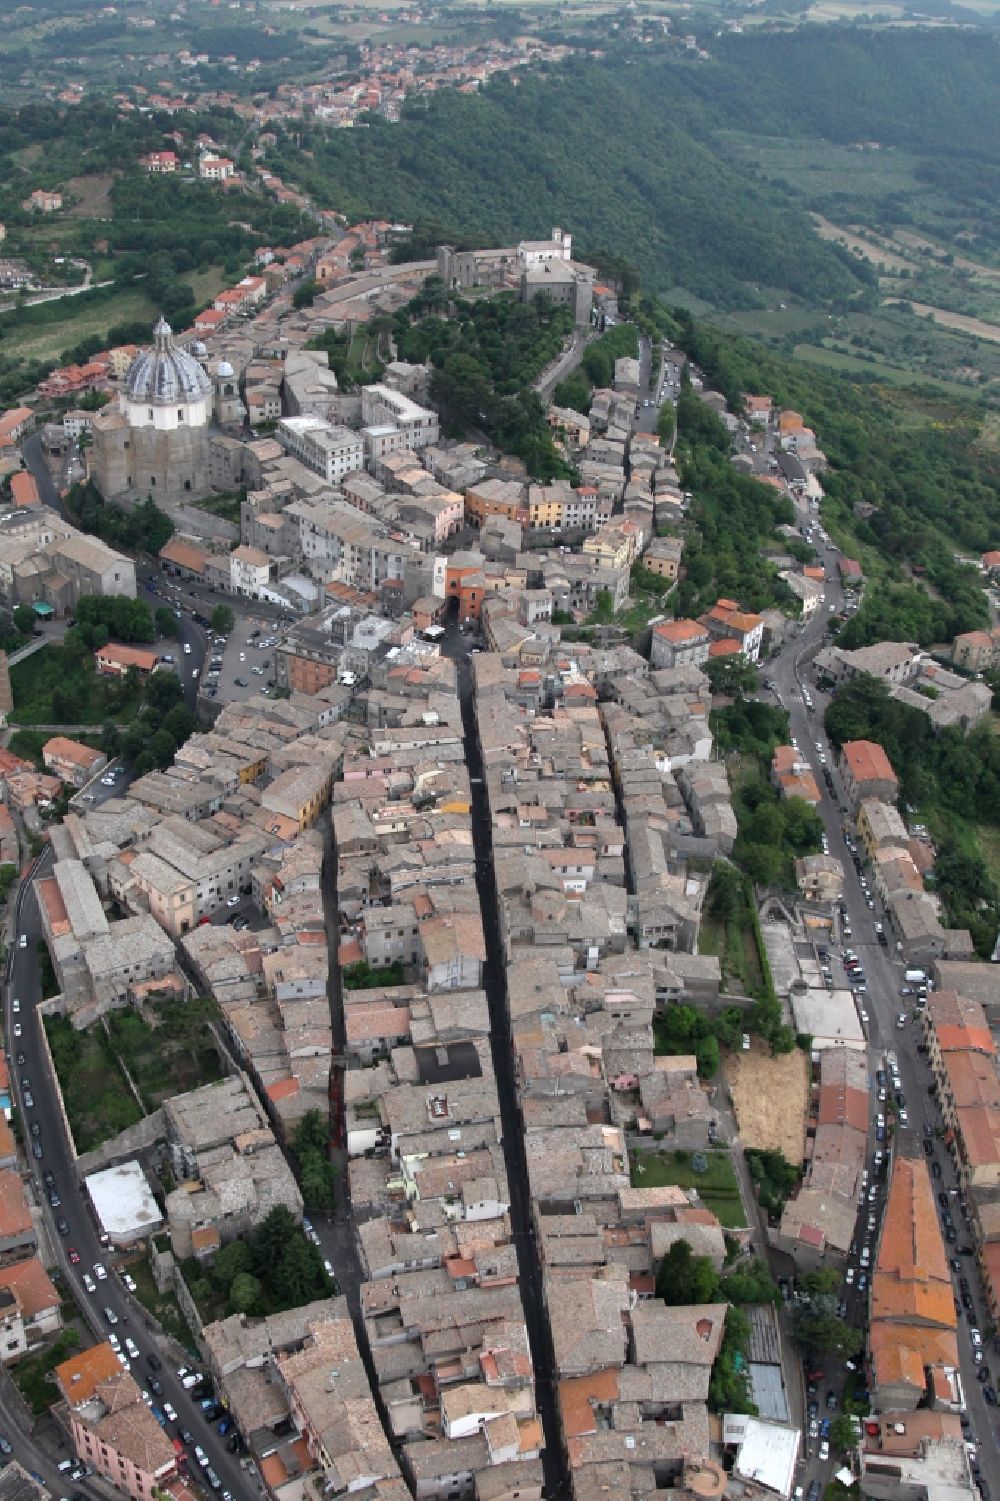 Montefiascone aus der Vogelperspektive: Altstadtbereich und Innenstadtzentrum in Montefiascone in Latium in Italien